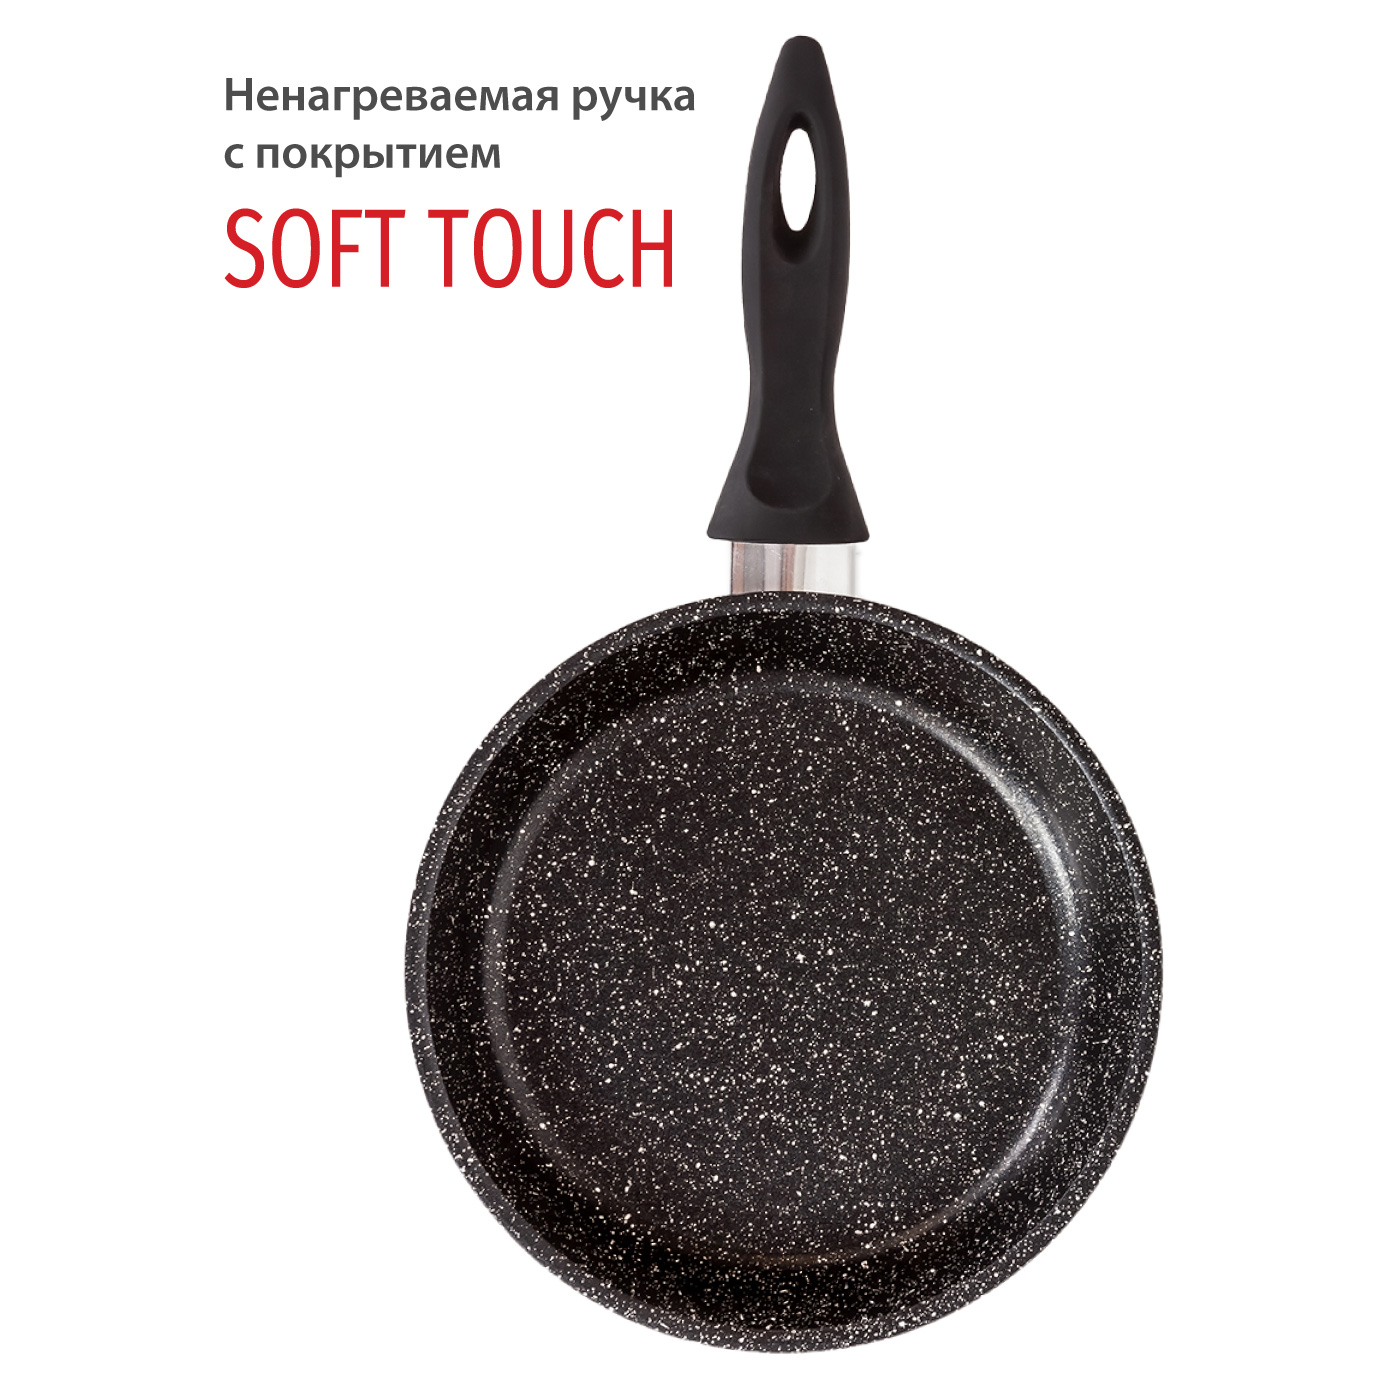 Картинка Сковорода Olivetti FP720L (20 см) по разумной цене купить в интернет магазине mall.su